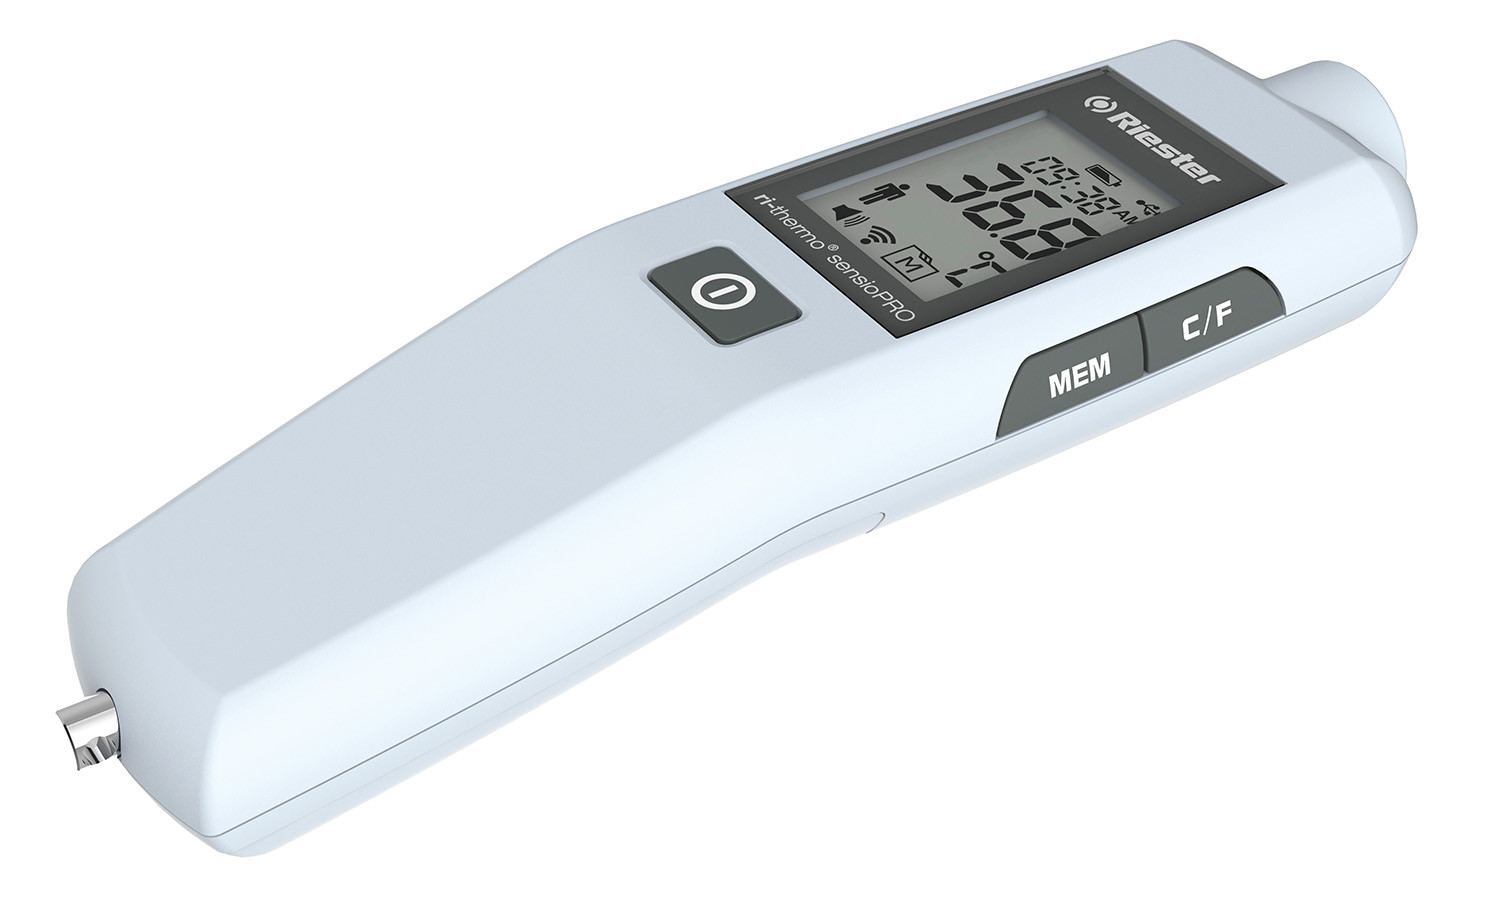 Thermomètre sans contact ri-thermo® sensioPRO